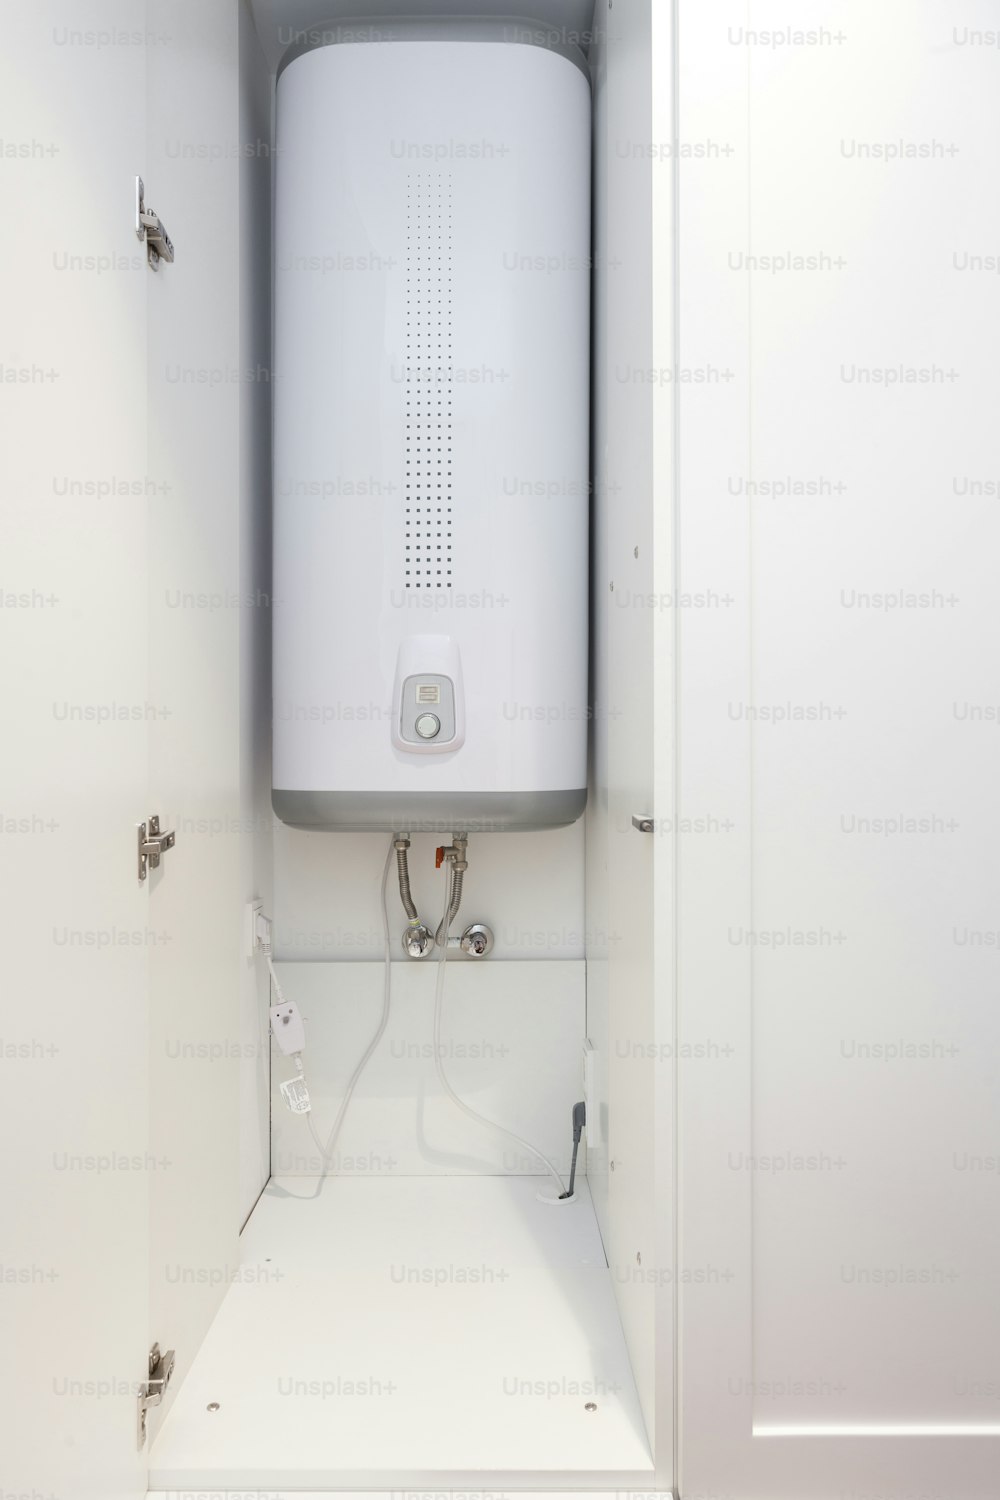 Chaudière électrique (chauffe-eau mural) dans la salle de bain